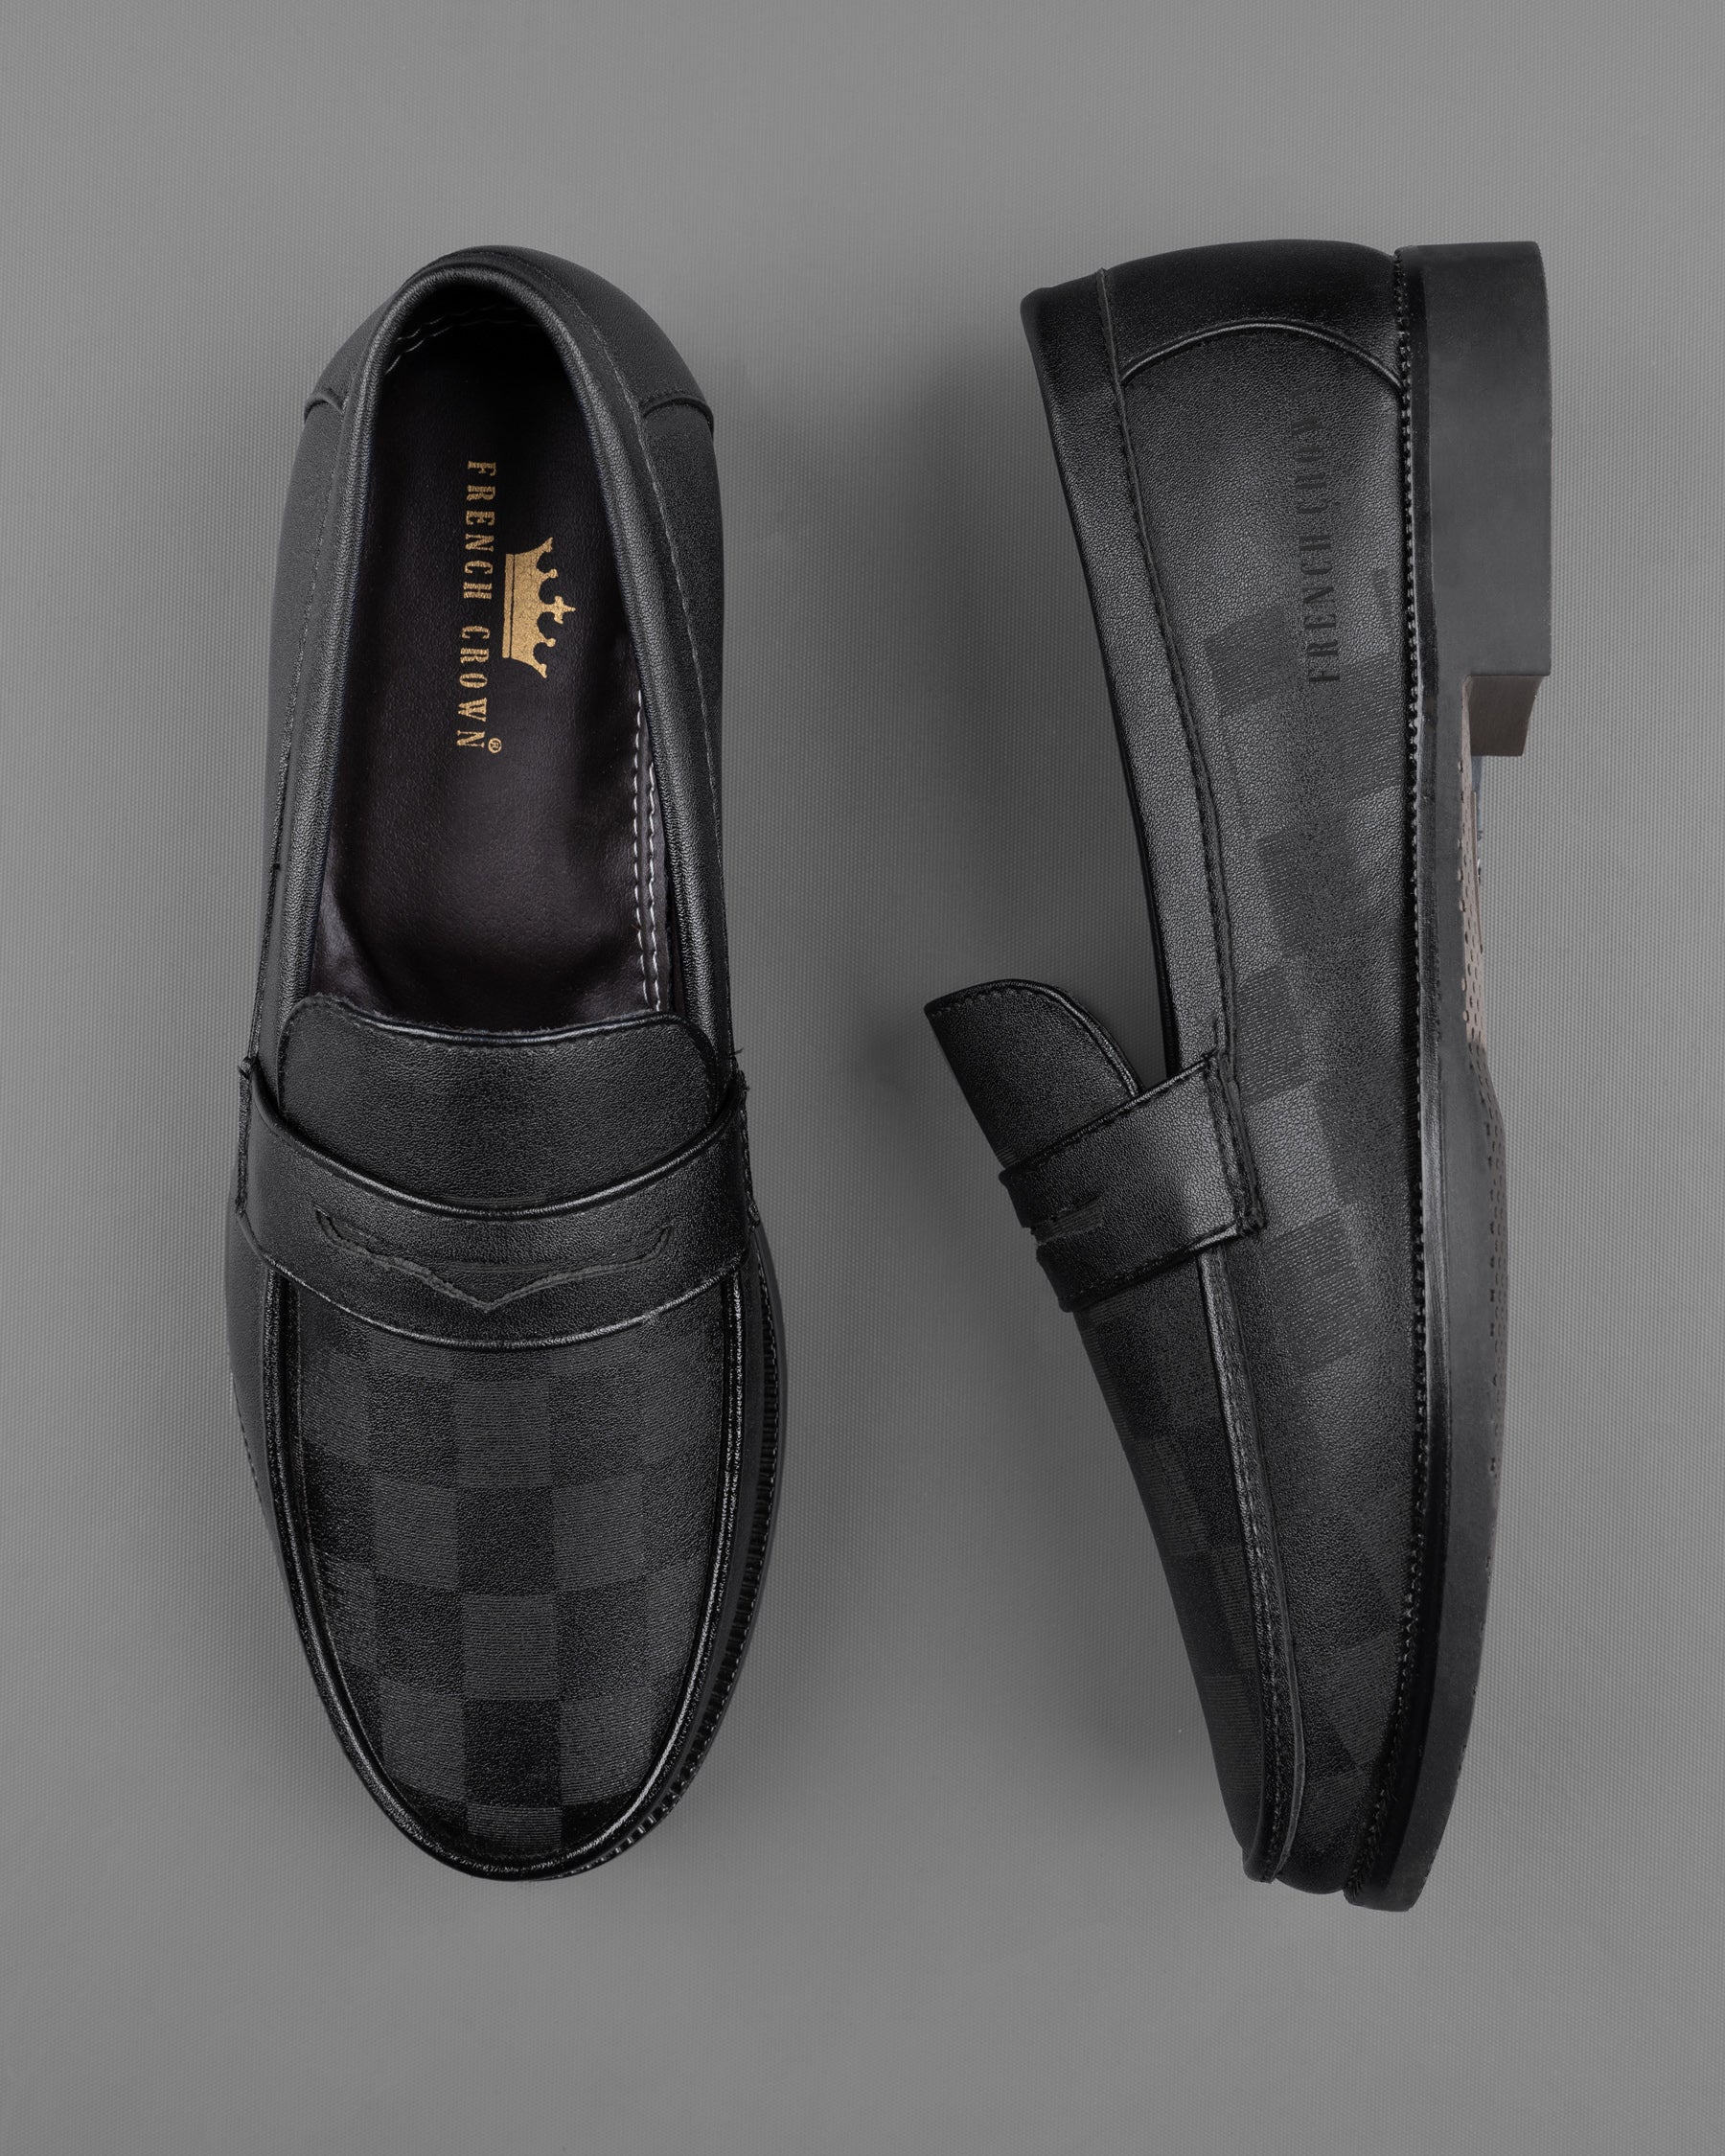 Jade Black subtle Checkered Loafer Shoes FT042-6, FT042-7, FT042-8, FT042-9, FT042-10